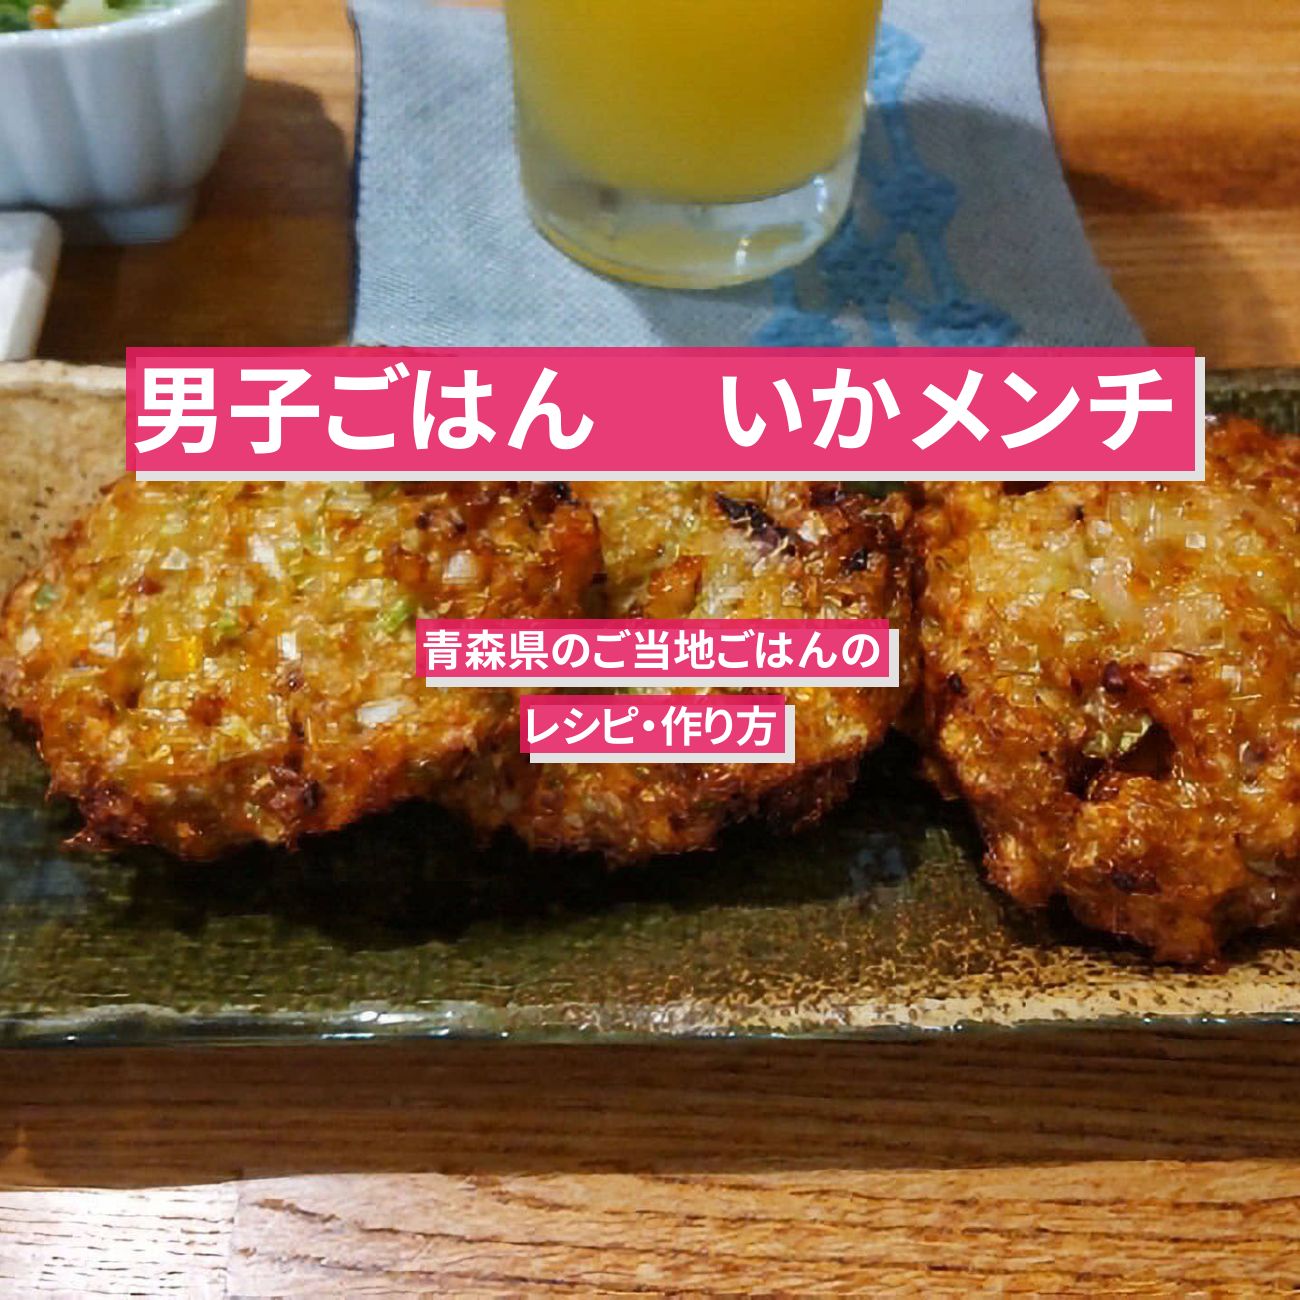 【男子ごはん】 『いかメンチ(イガメンチ)』青森県のご当地ごはんのレシピ・作り方